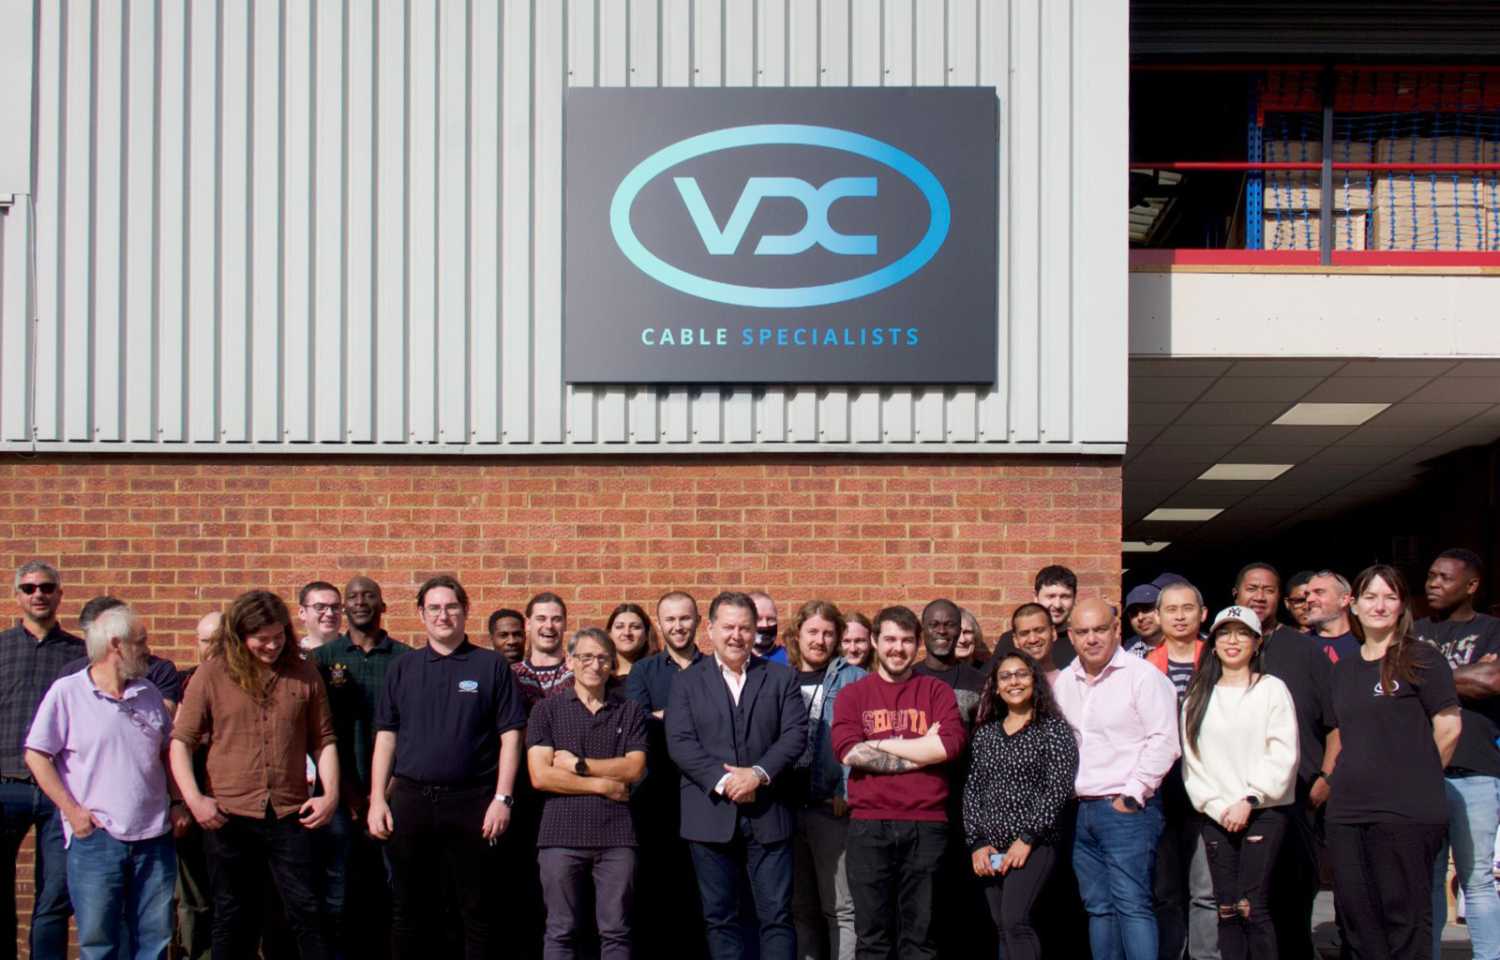 The VDC Trading team